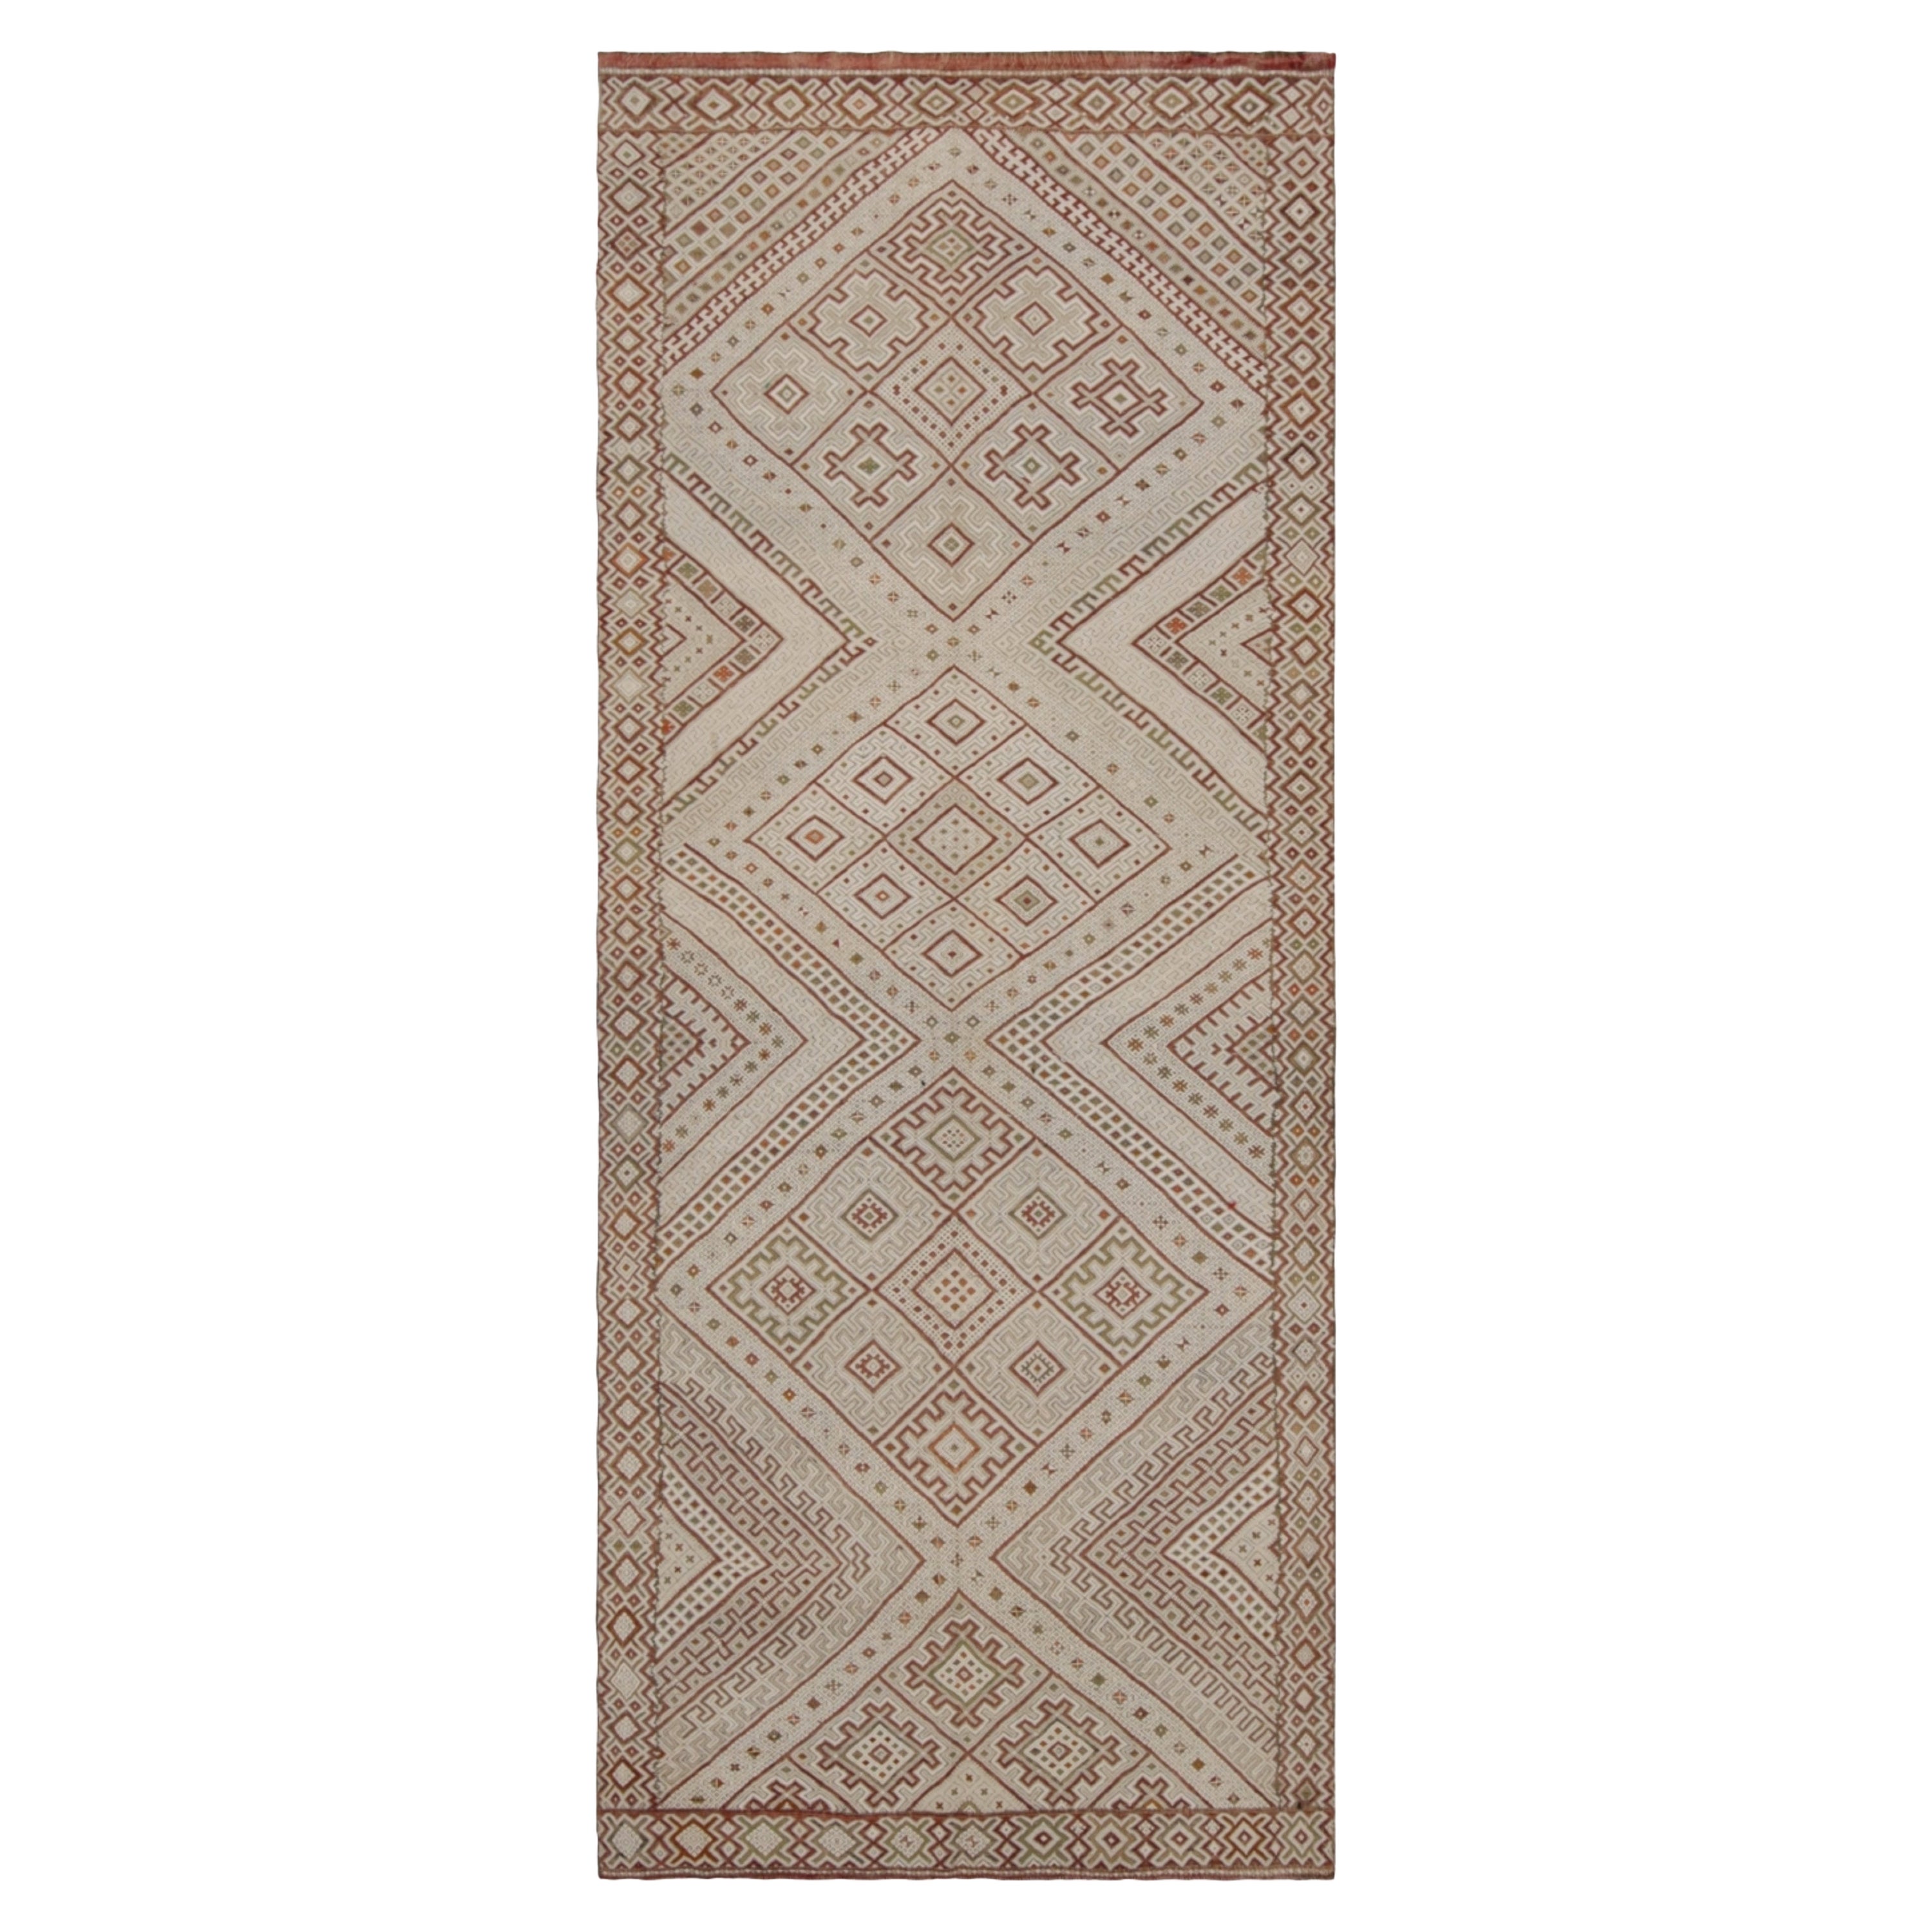 Tapis Kilim marocain Zayane beige vintage avec motif géométrique, de Rug & Kilim